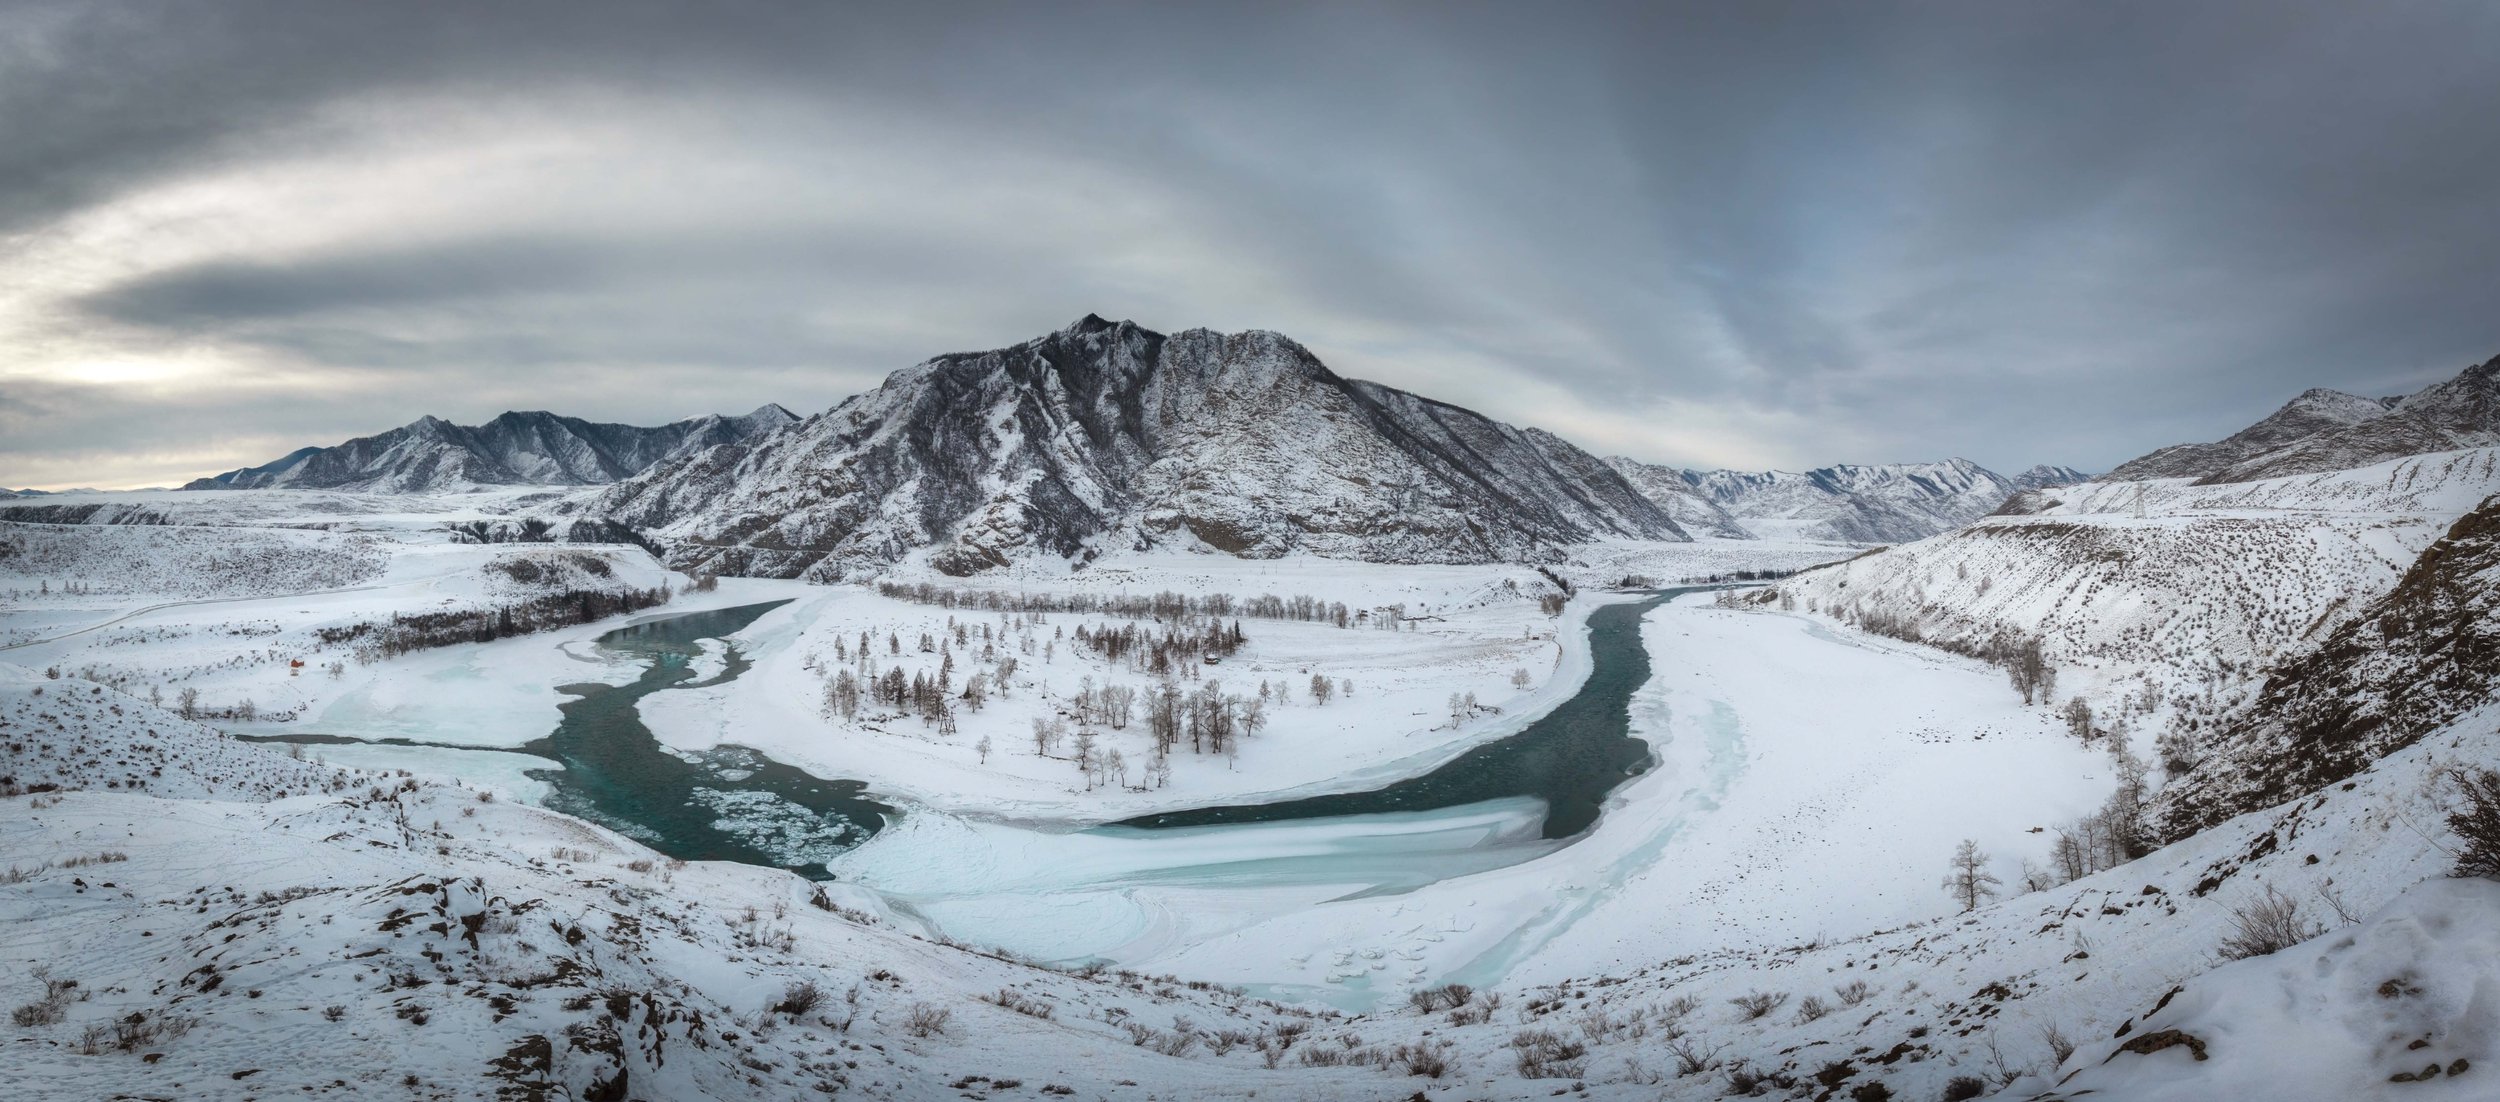 Слияние рек Чуя и Катунь зимой